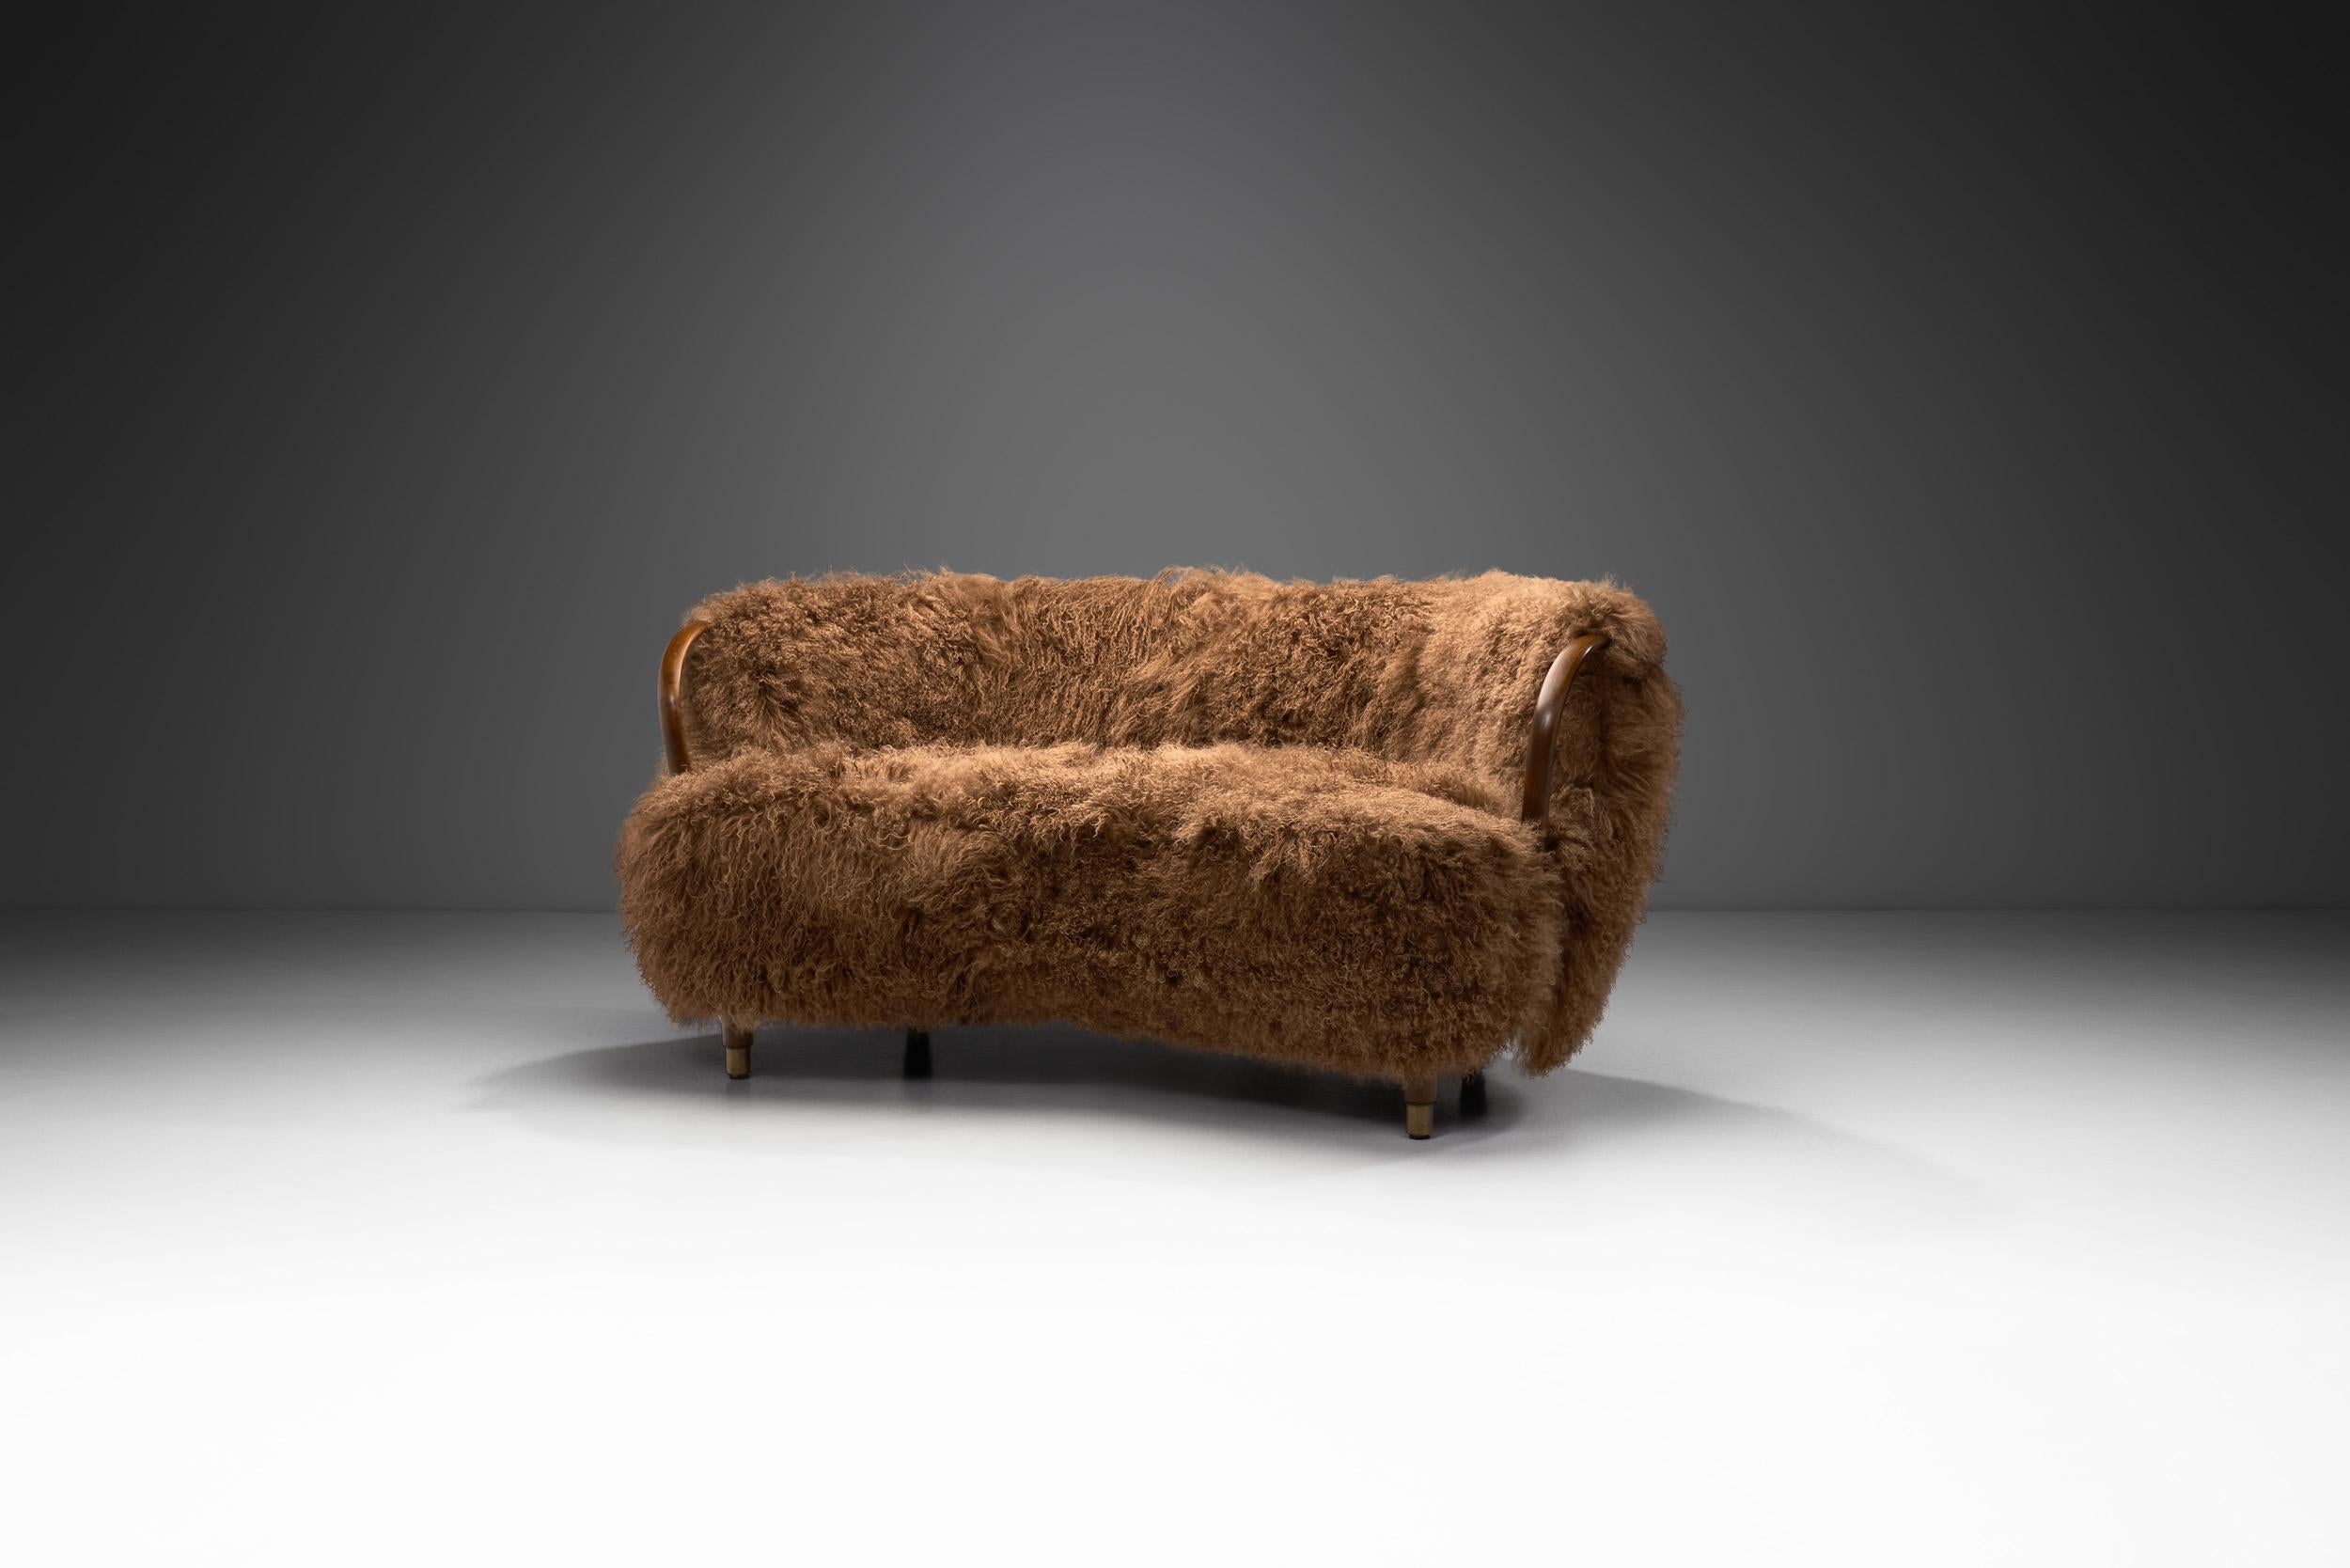 Bei diesem dänischen Zweisitzer-Sofa der N. A. Jørgensens Møbelfabrik dreht sich alles um hochwertige MATERIALIEN, Komfort und das Können der Kunsttischler dieser Zeit. Das Design übertrifft in vielerlei Hinsicht das Wort 